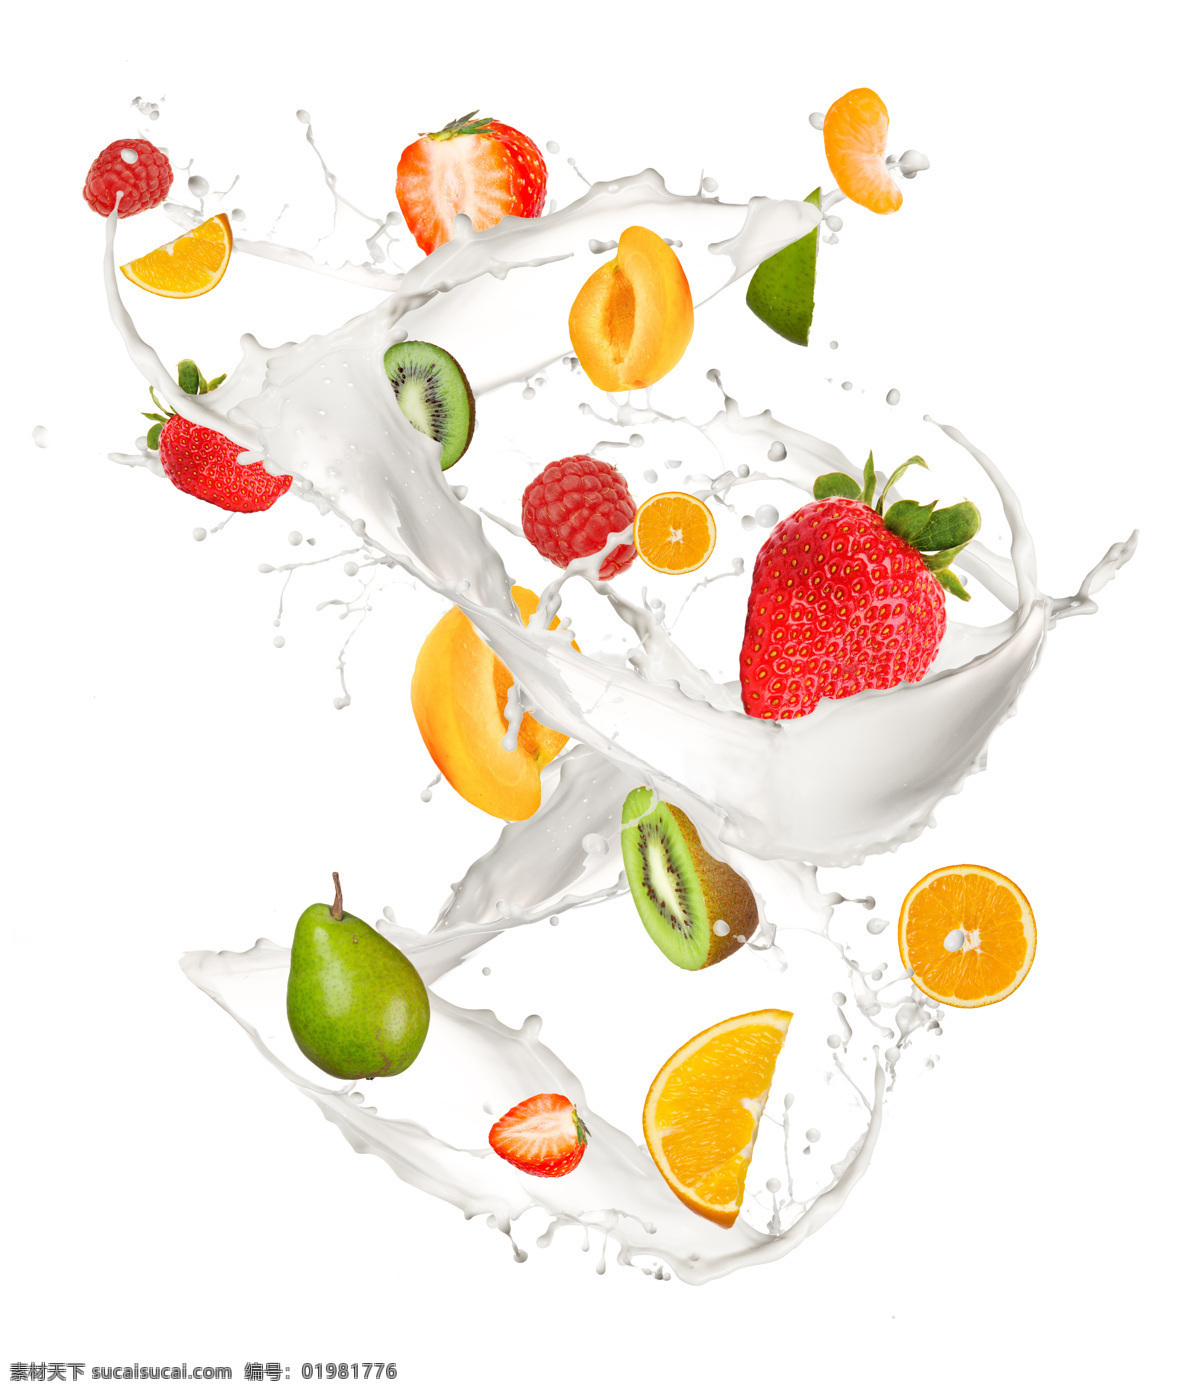 牛奶 水果 食物 新鲜 溅落 各种水果 橙子 草莓 泥猴桃 梨子 水果图片 餐饮美食